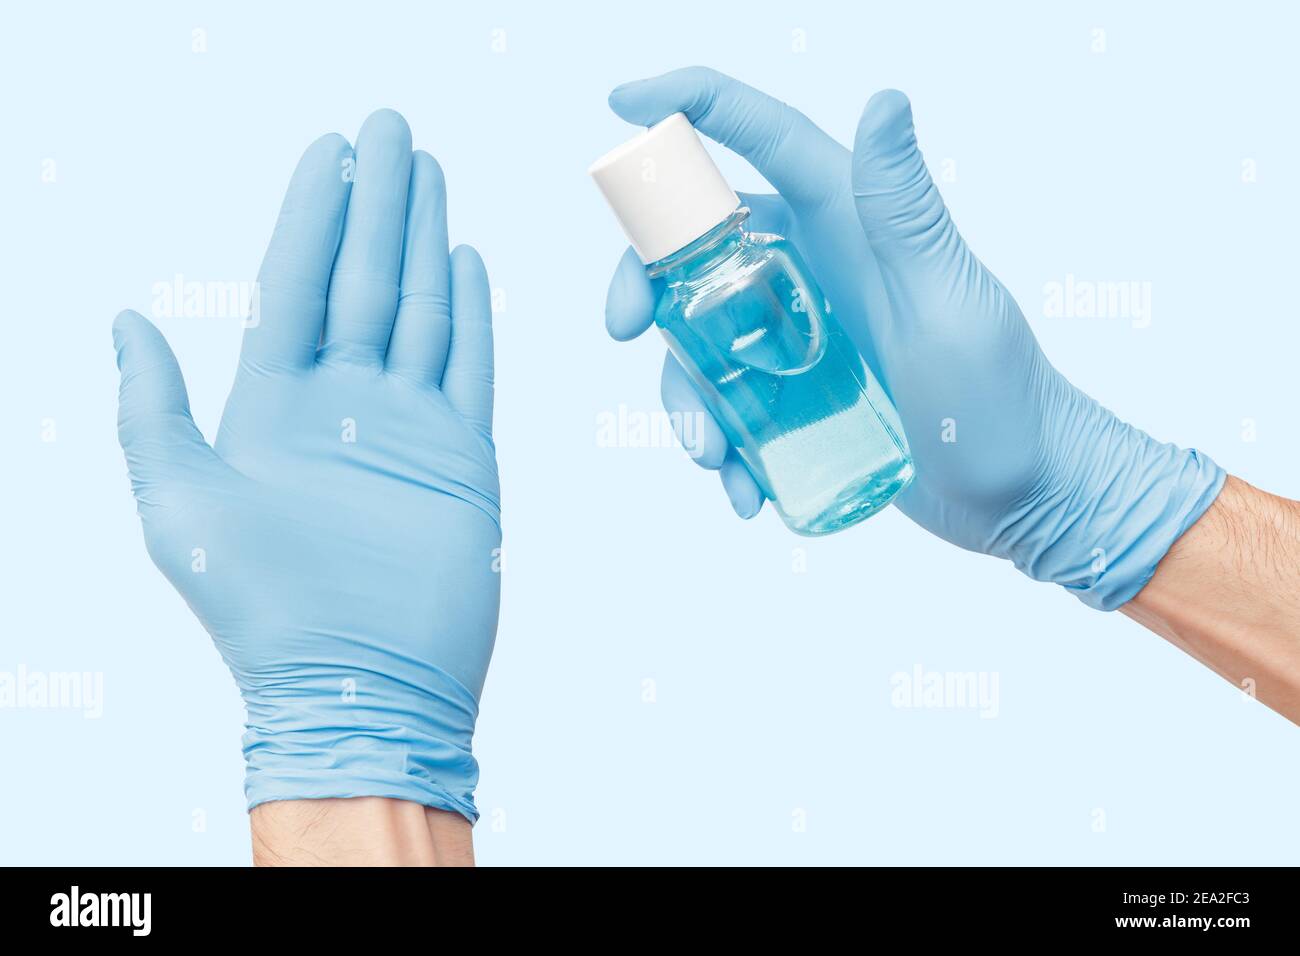 La mano isolata con guanti utilizza un disinfettante liquido a base di alcol che uccide la maggior parte dei tipi di microbi e virus. Concetto di Covid e germofobia Foto Stock